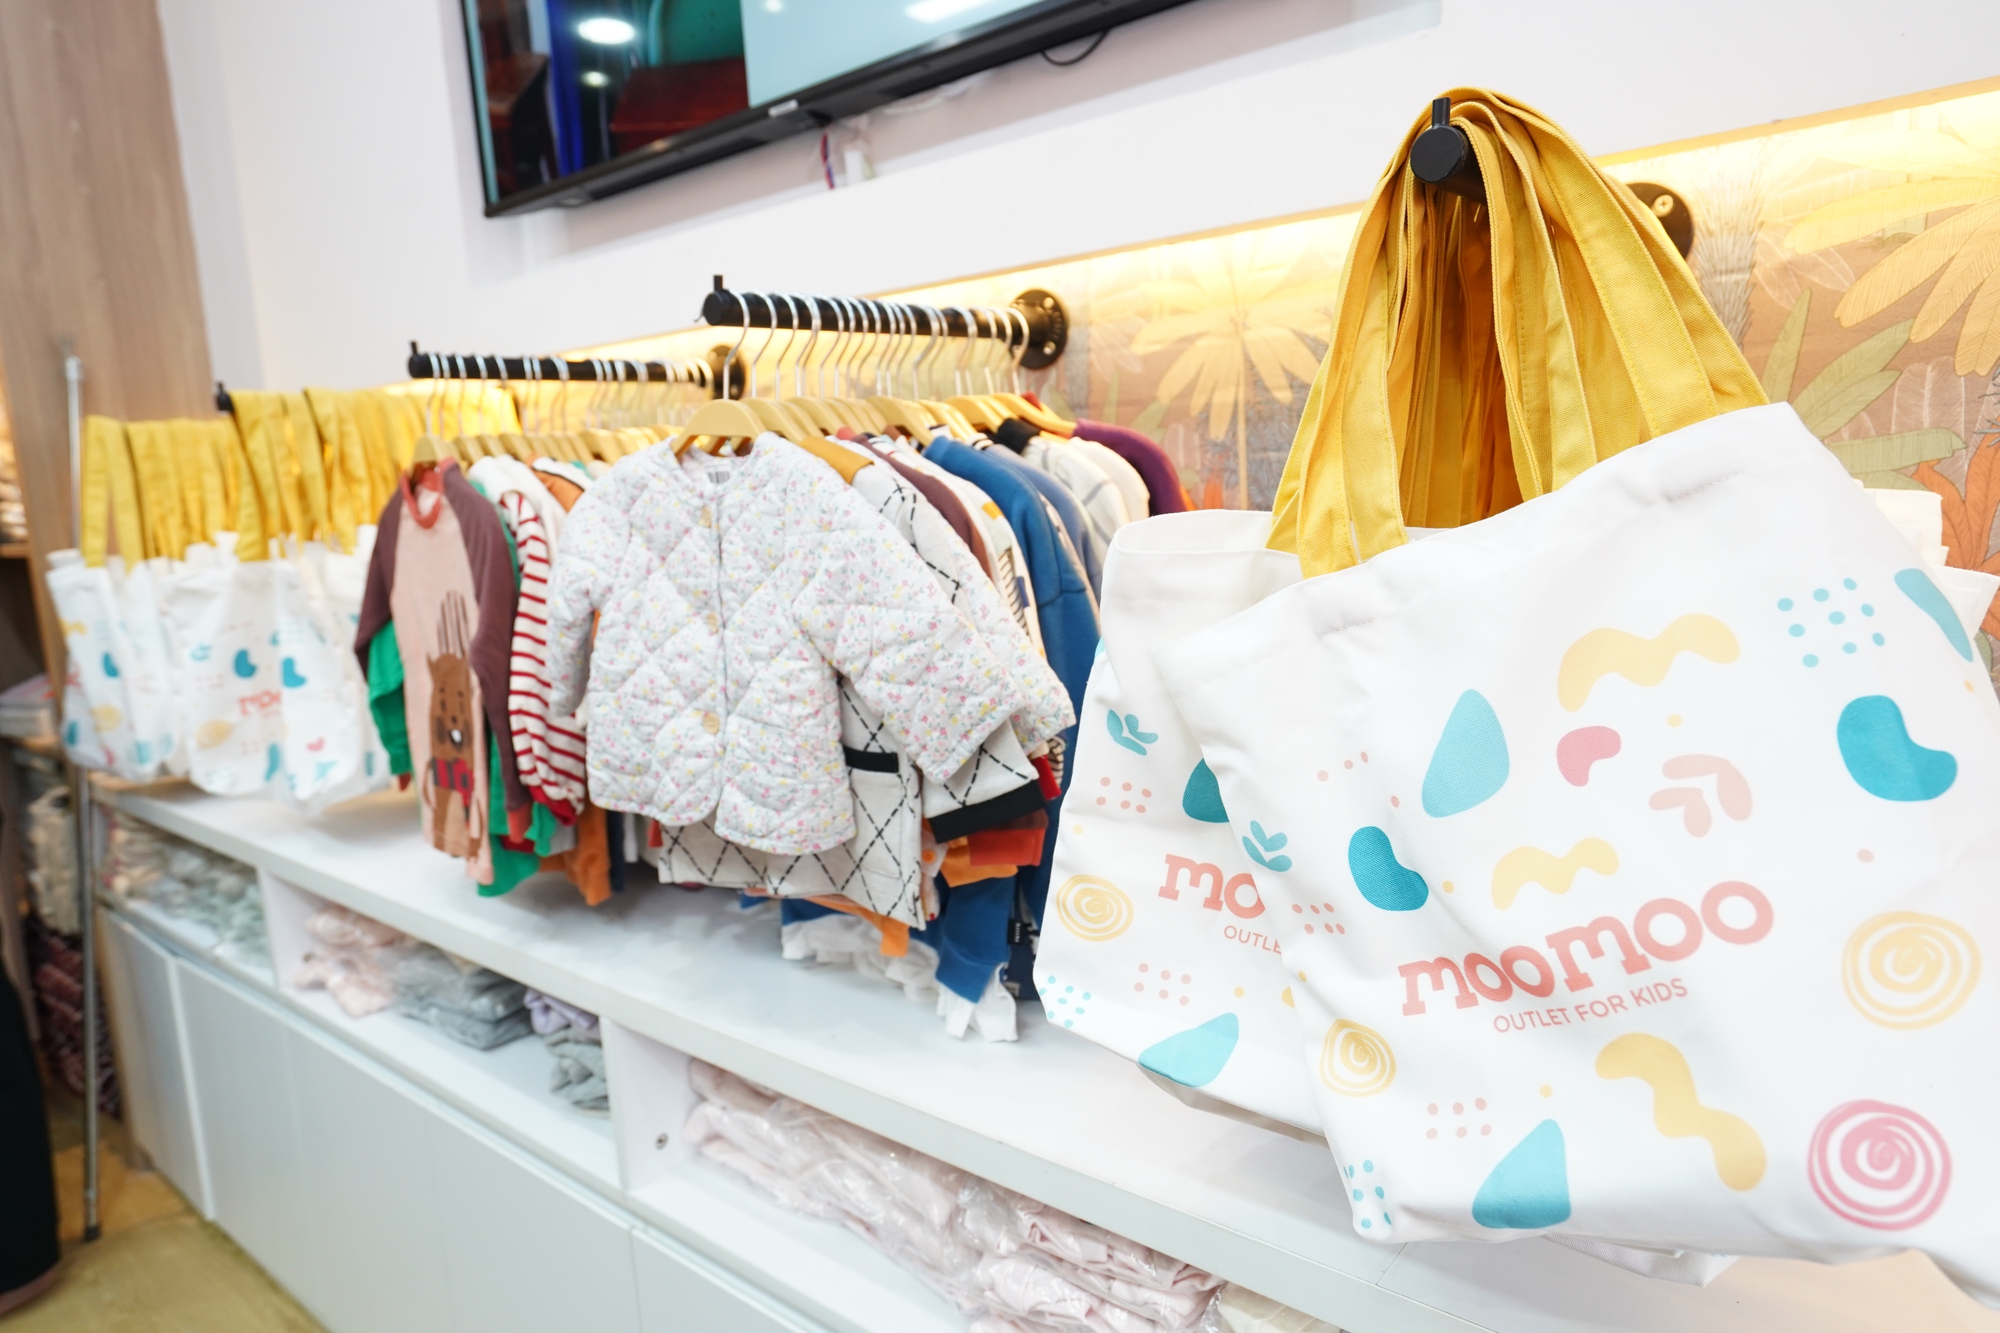 Quy tụ nhiều thương hiệu chất lượng, cửa hàng thời trang trẻ em mới đổ bộ Hà Nội khiến các mẹ thích mê - Ảnh 1.